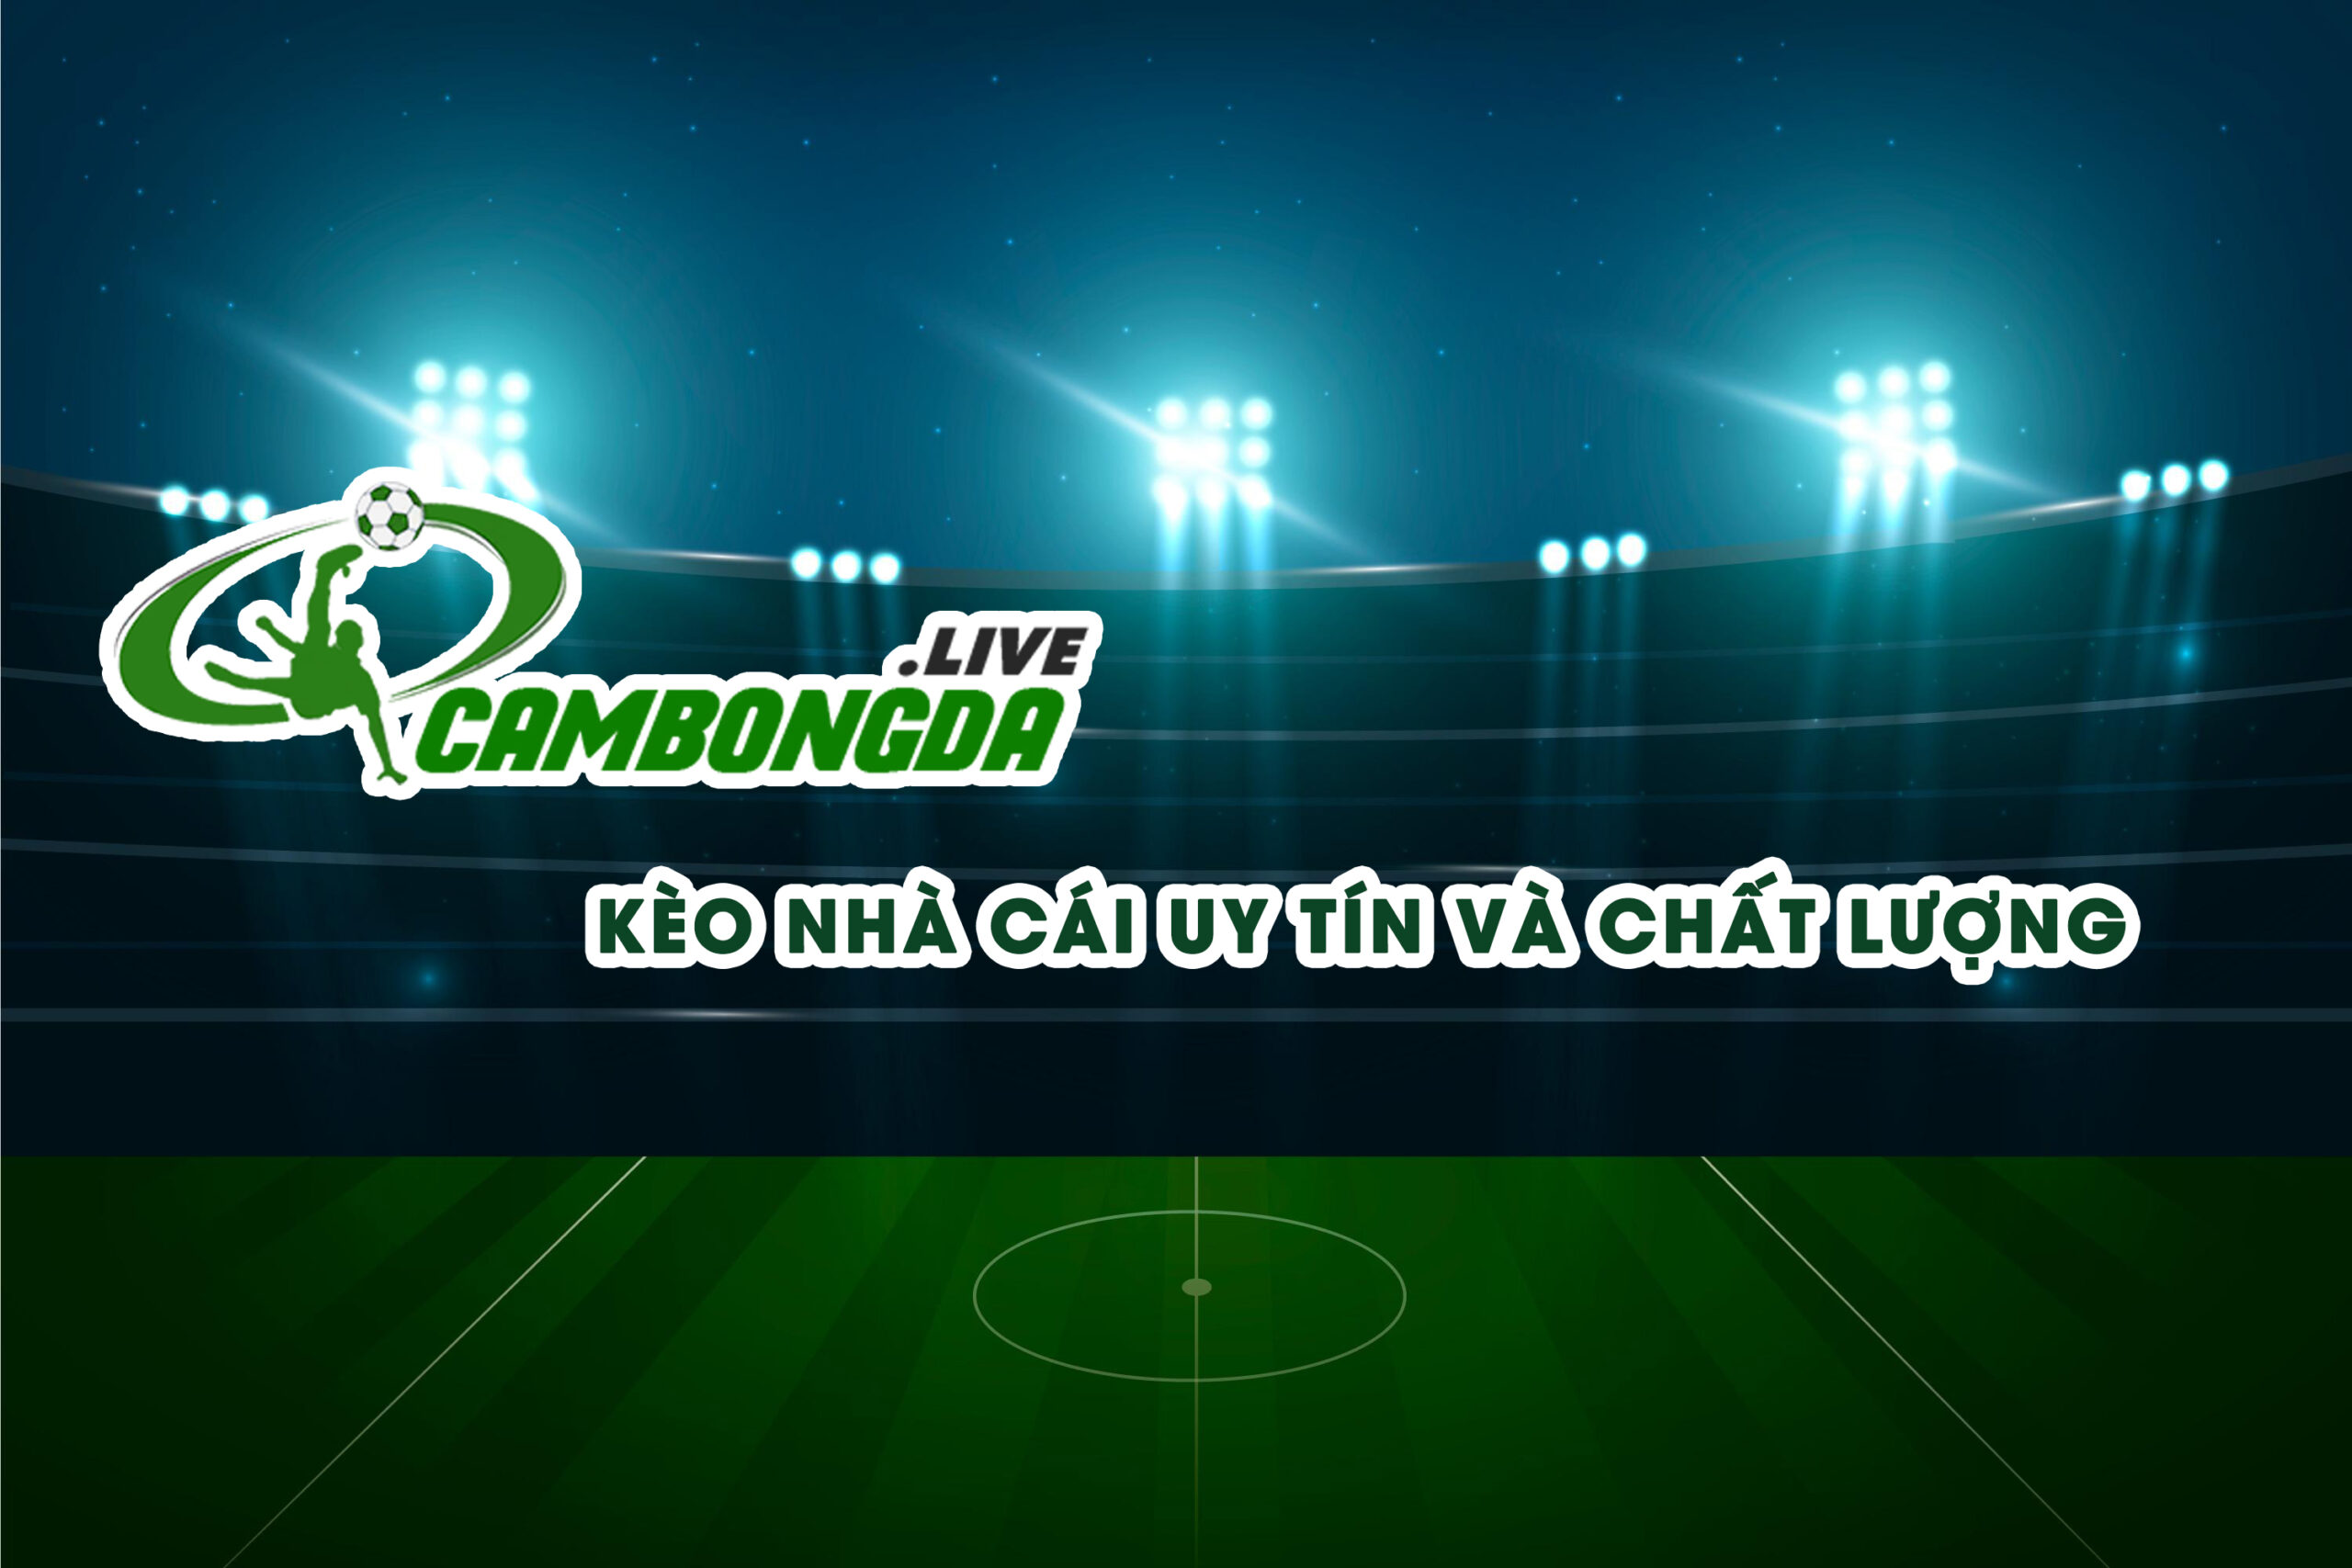 Kèo nhà cái bóng đá trên CamBongDa cập nhật nhanh chóng và chính xác